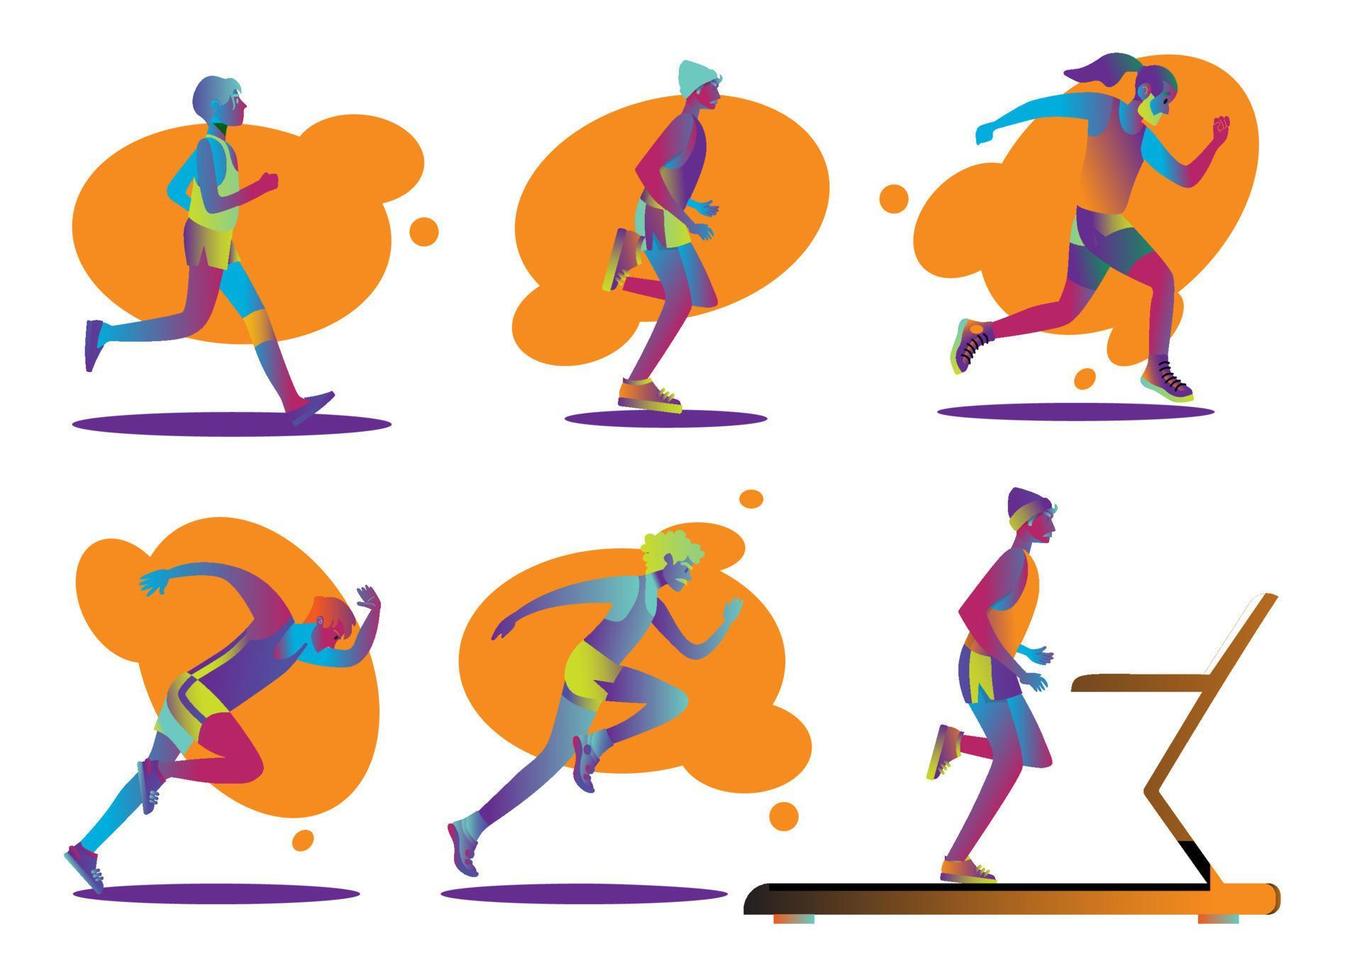 Set aus männlichen und weiblichen Läufern. flache zeichentrickfiguren lokalisiert auf hintergrund. Vektor-Illustration vektor